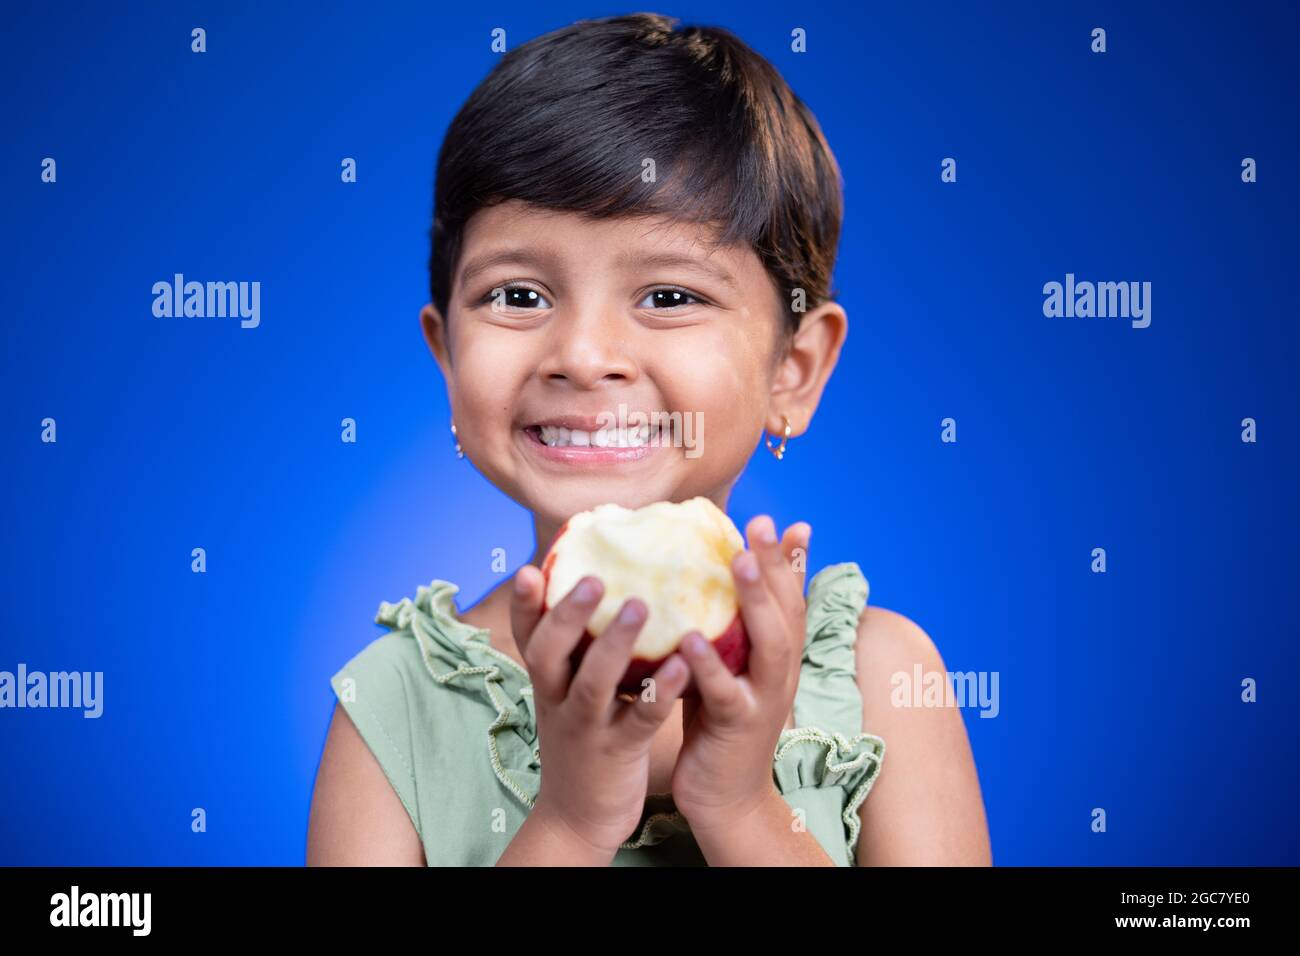 Ritratto del capretto della ragazza che tiene la mela su sfondo blu - concetto di consumo sano e di stile di vita Foto Stock